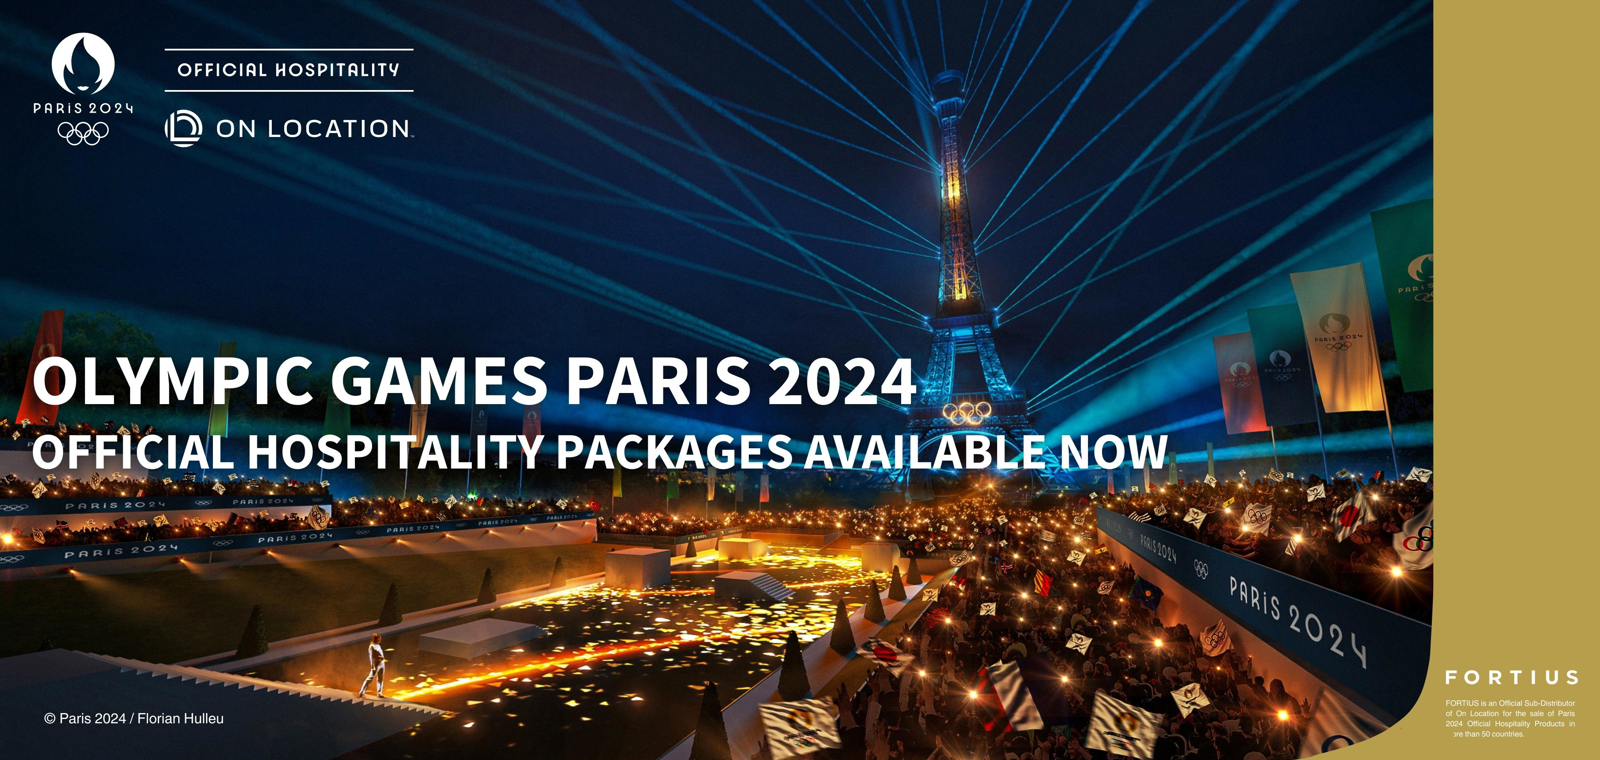 Home of Paris 2024 Hospitality